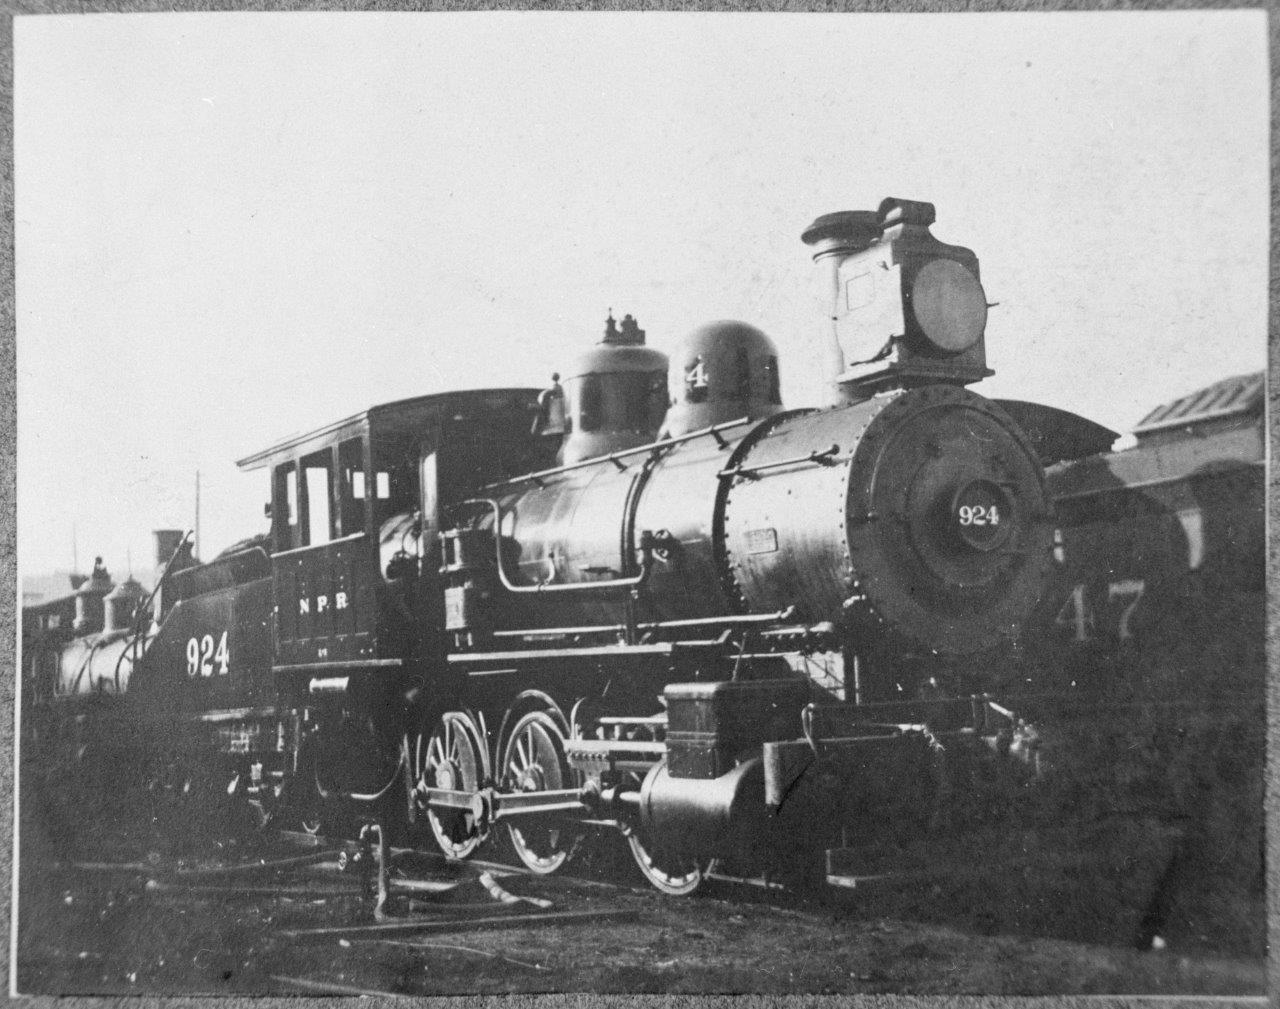 NP 924 circa 1908